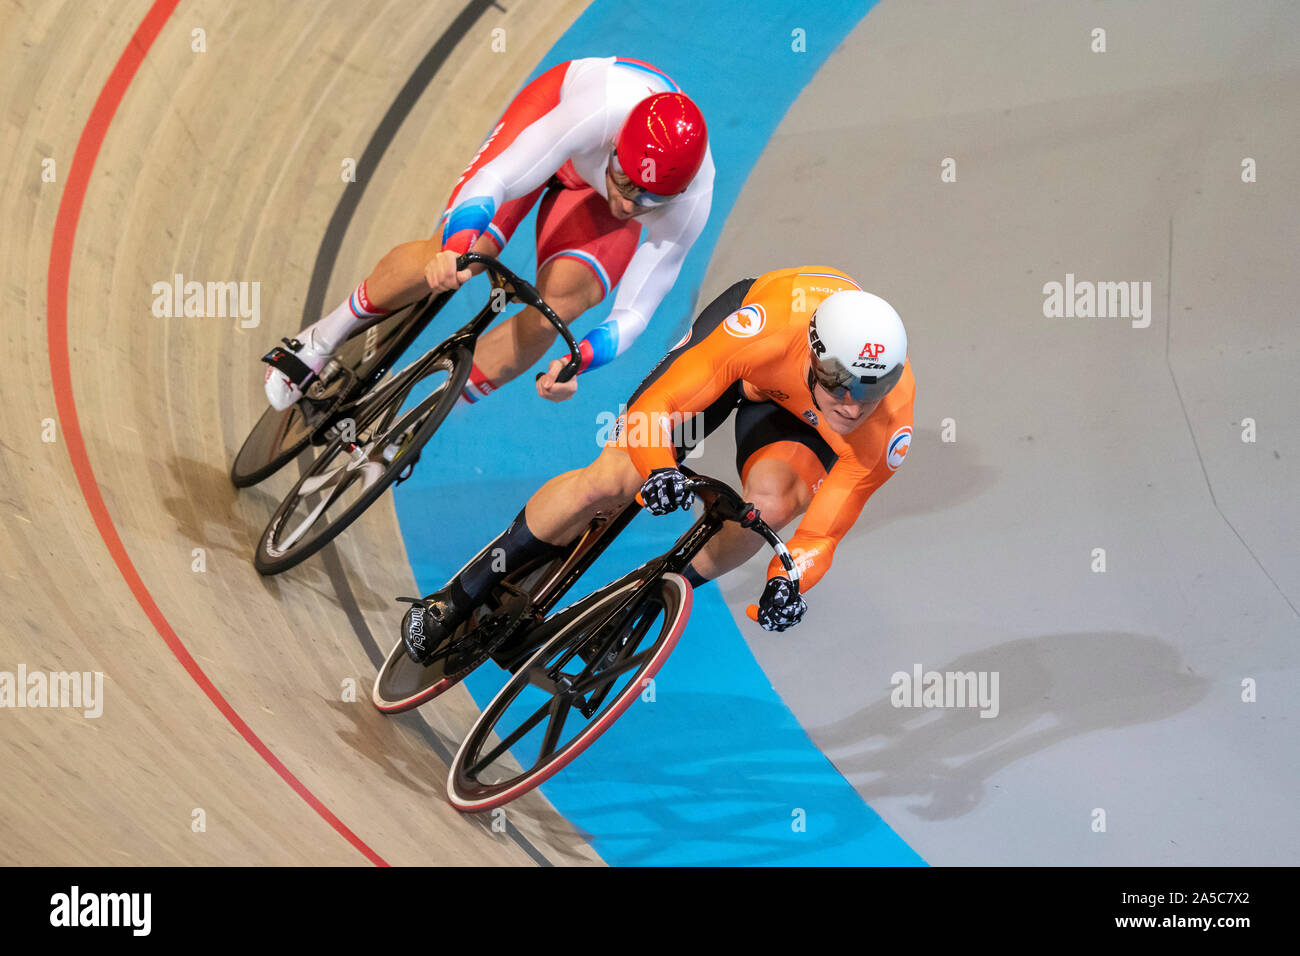 Jeffrey Hoogland NED beats Denis Dmitriev RUS beim UEC Titel Radfahren Europäische Meisterschaft am Oktober, 16 2019 in Apeldoorn, Niederlande. (Foto von SCS/Sander Chamid Stockfoto